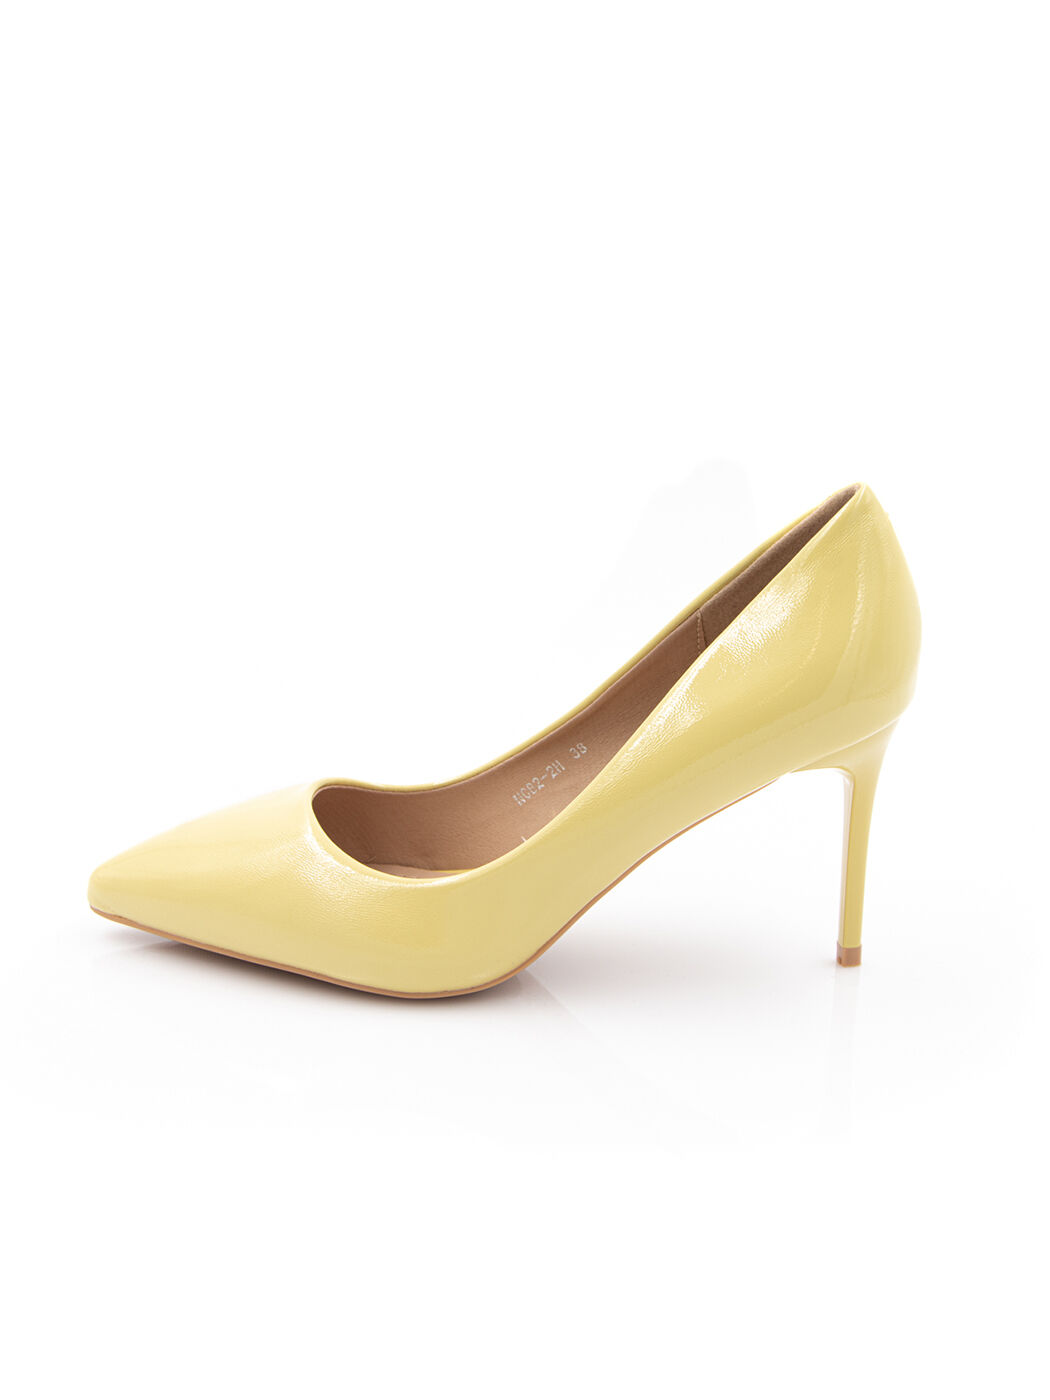 Туфлі жіночі жовті штучний лак каблук шпилька демісезон від виробника HM